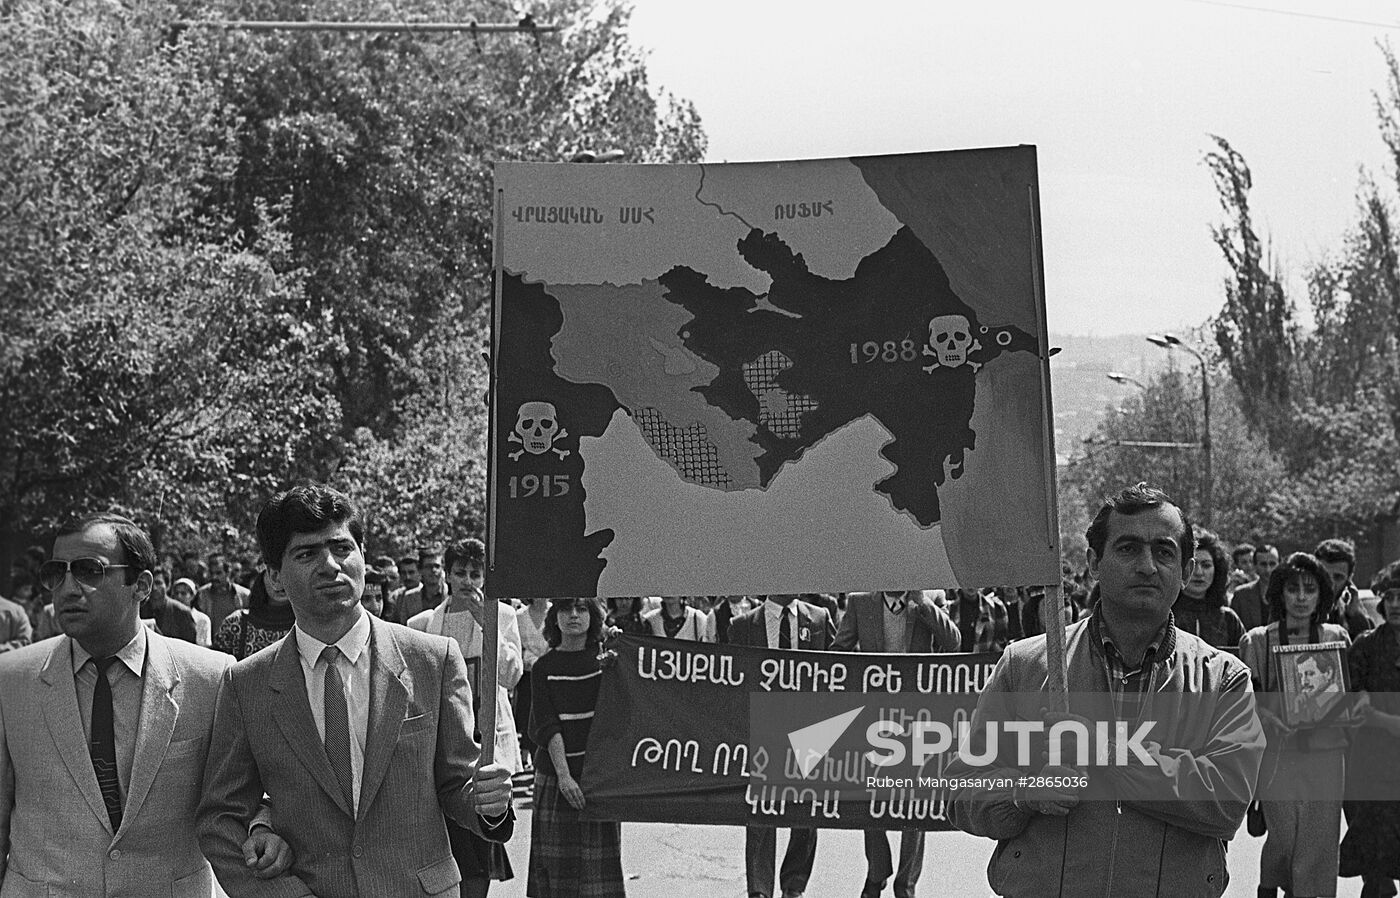 Events in Yerevan in 1988